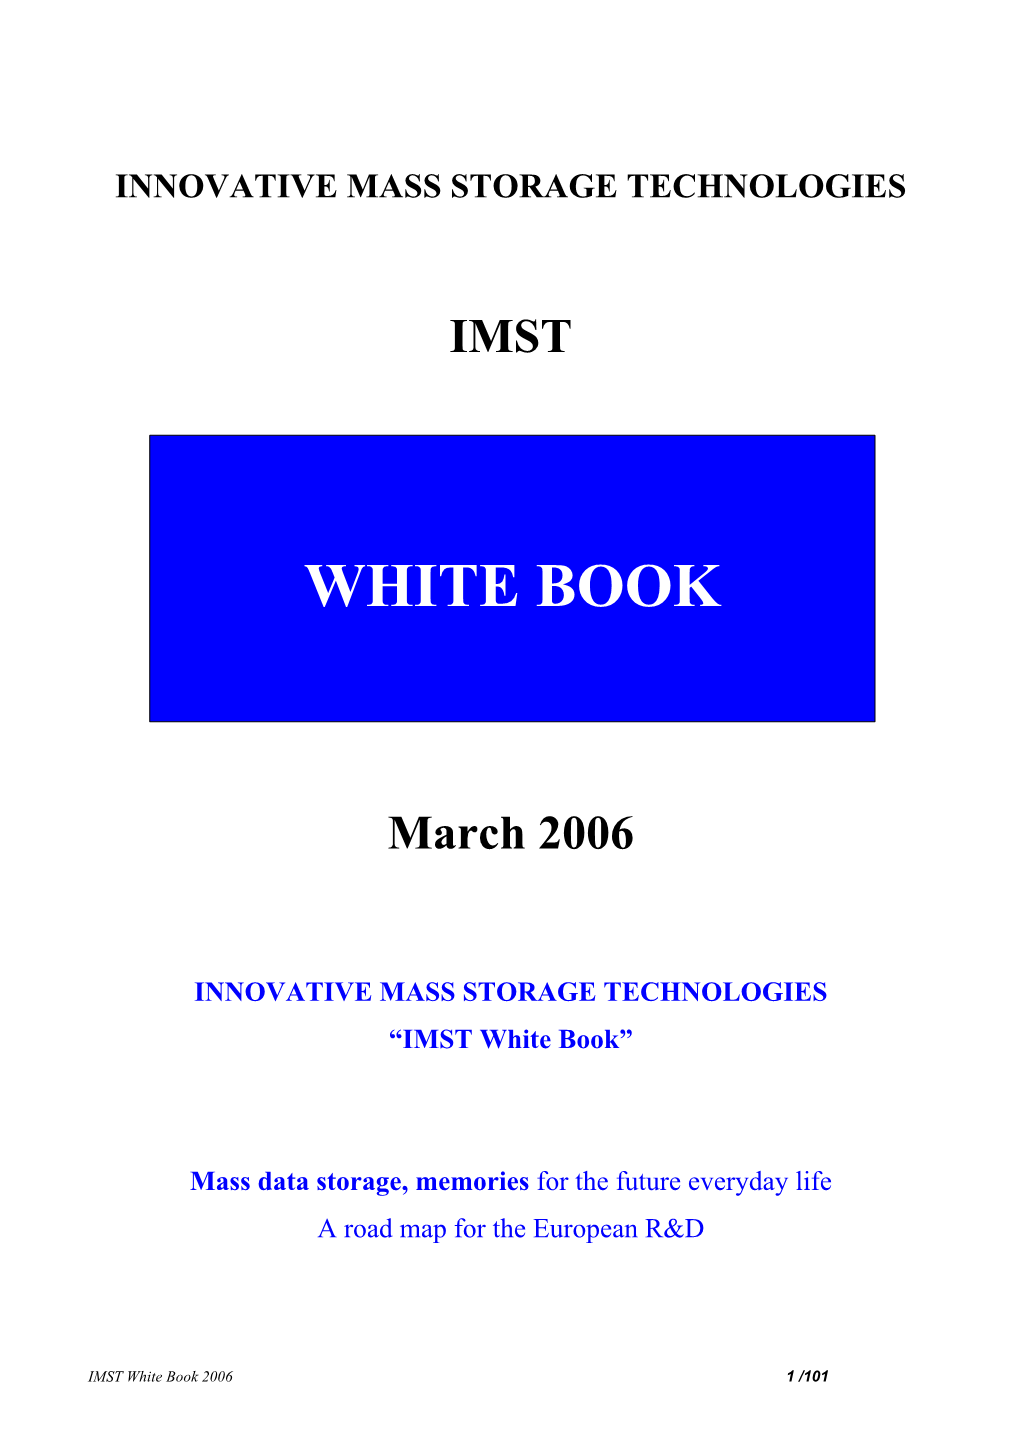 White Bookbook